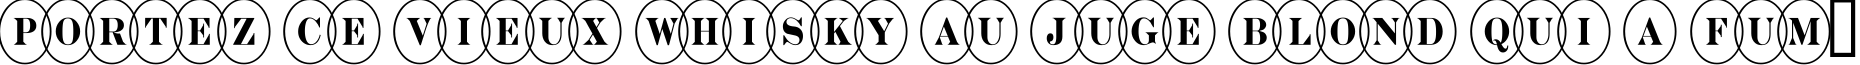 Пример написания шрифтом a_DiscoSerifNrOvl текста на французском